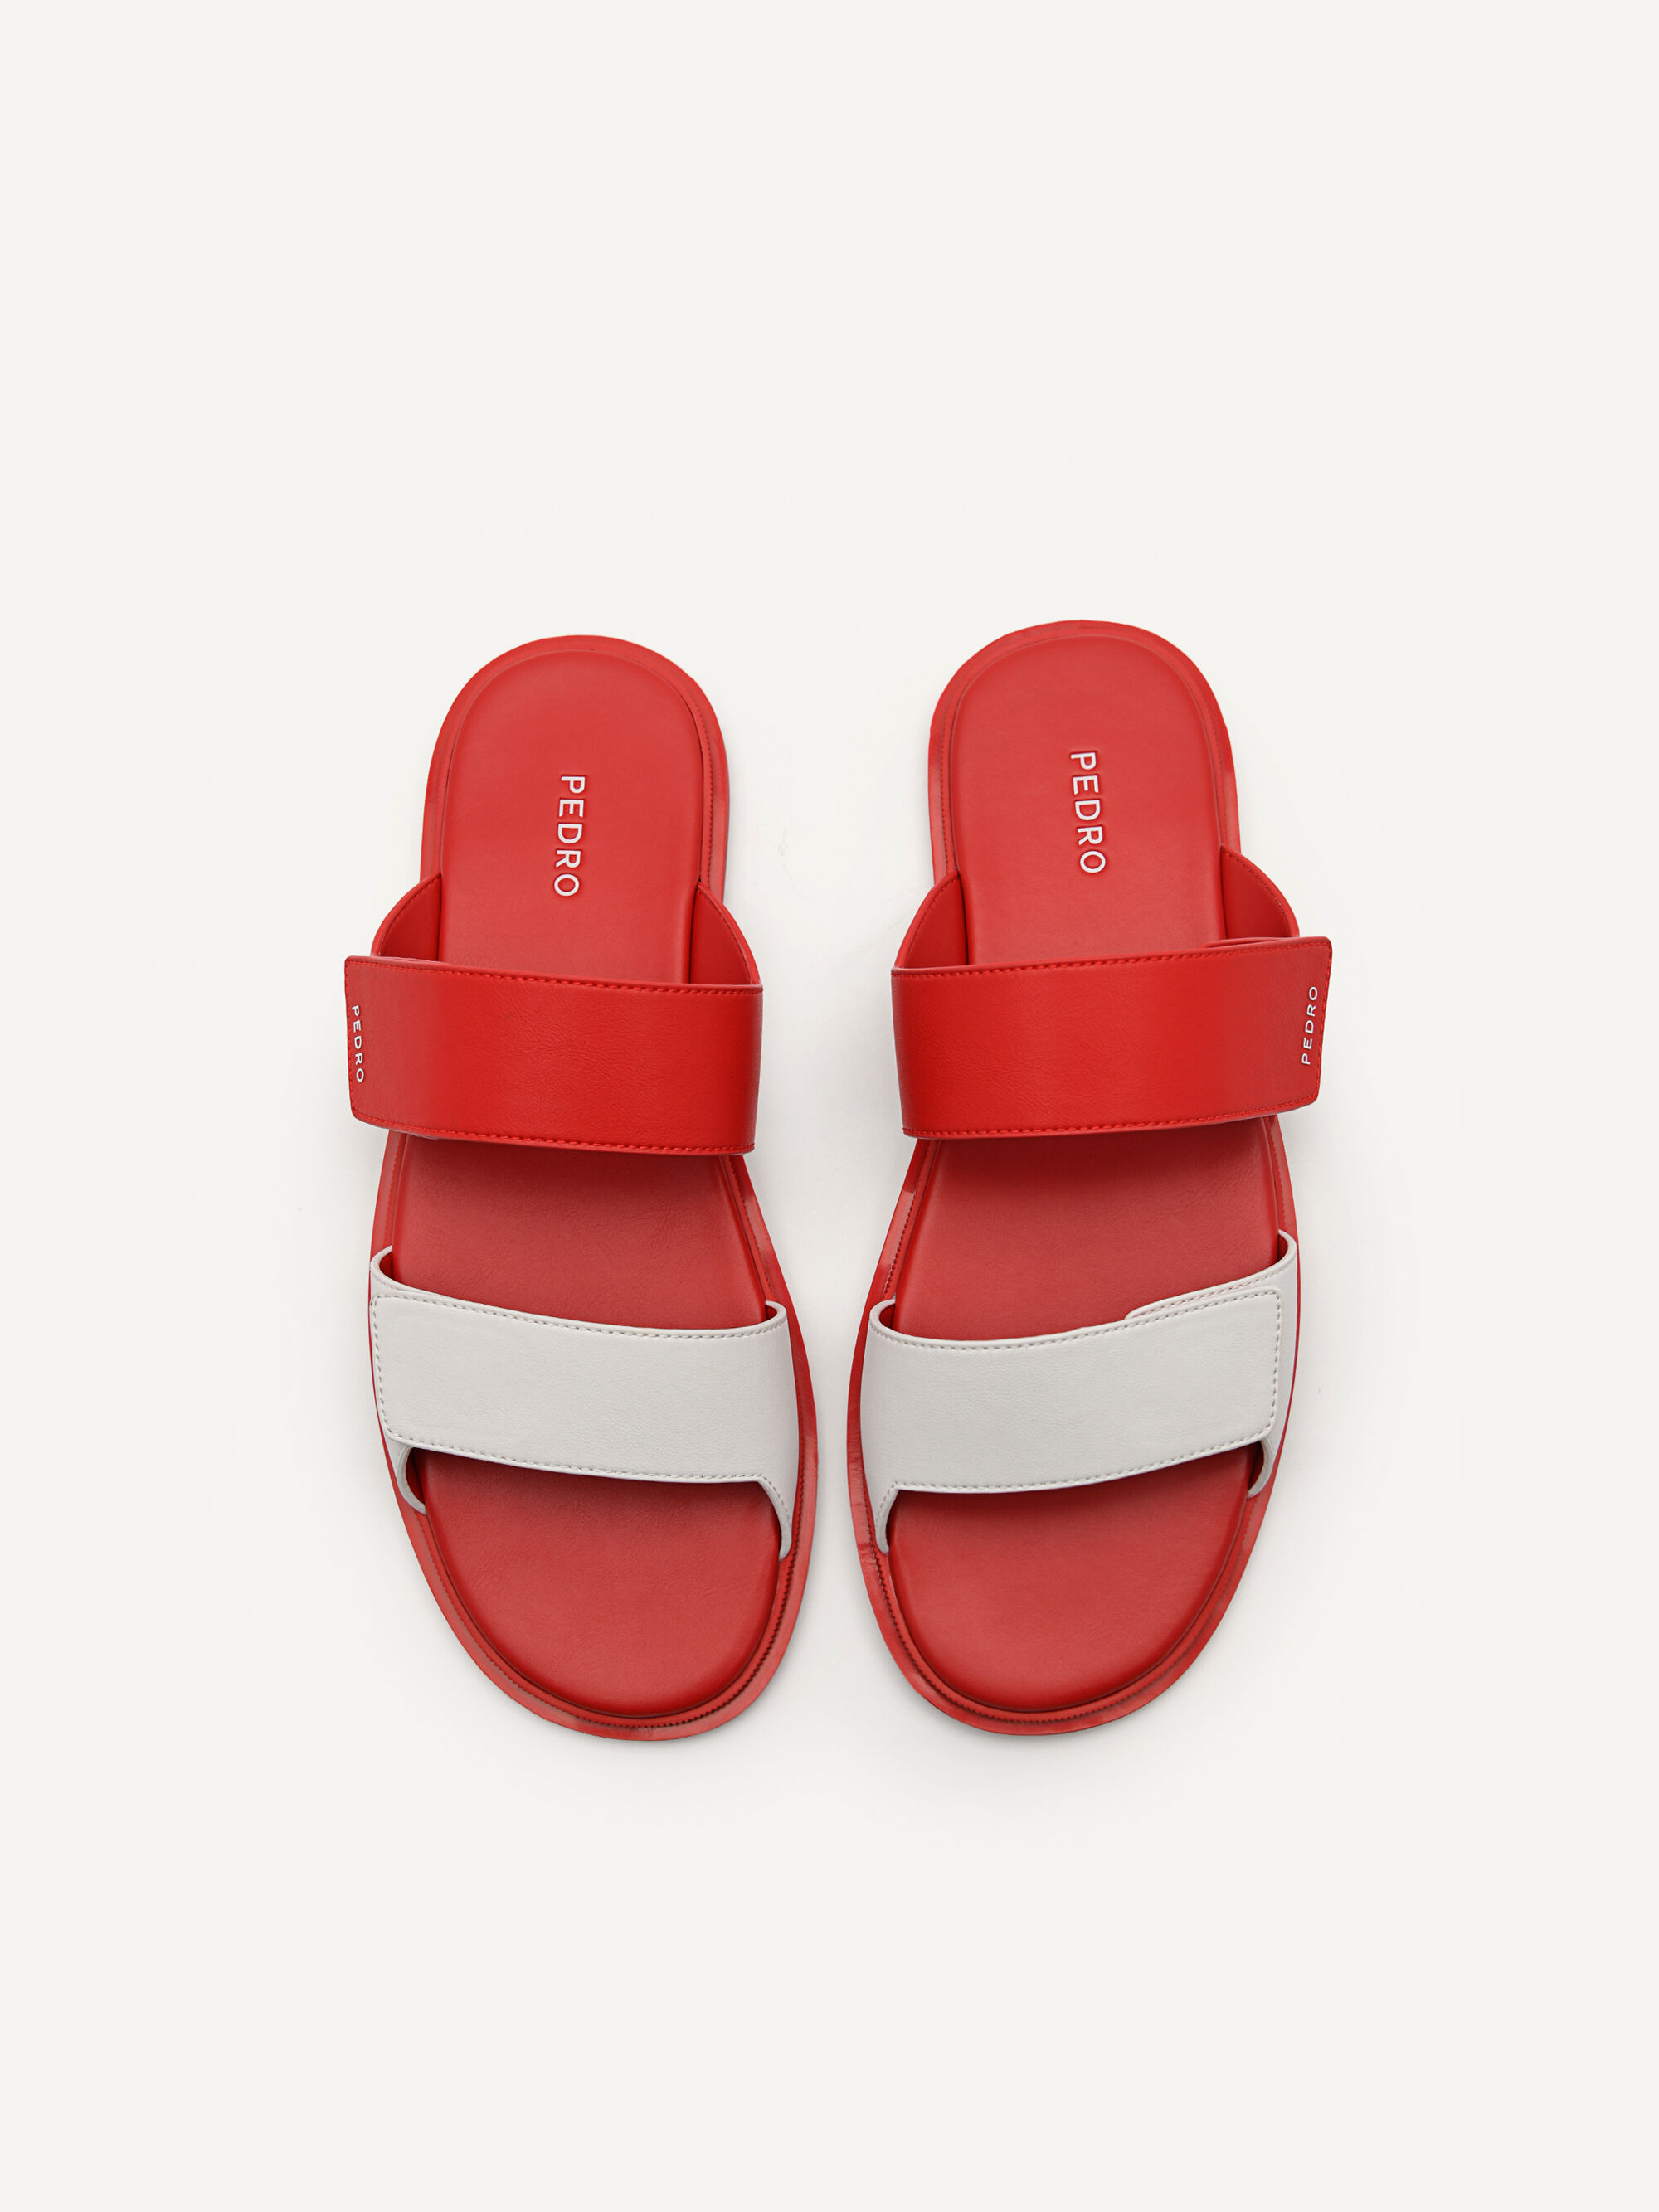 Stride Slide Sandals, Red